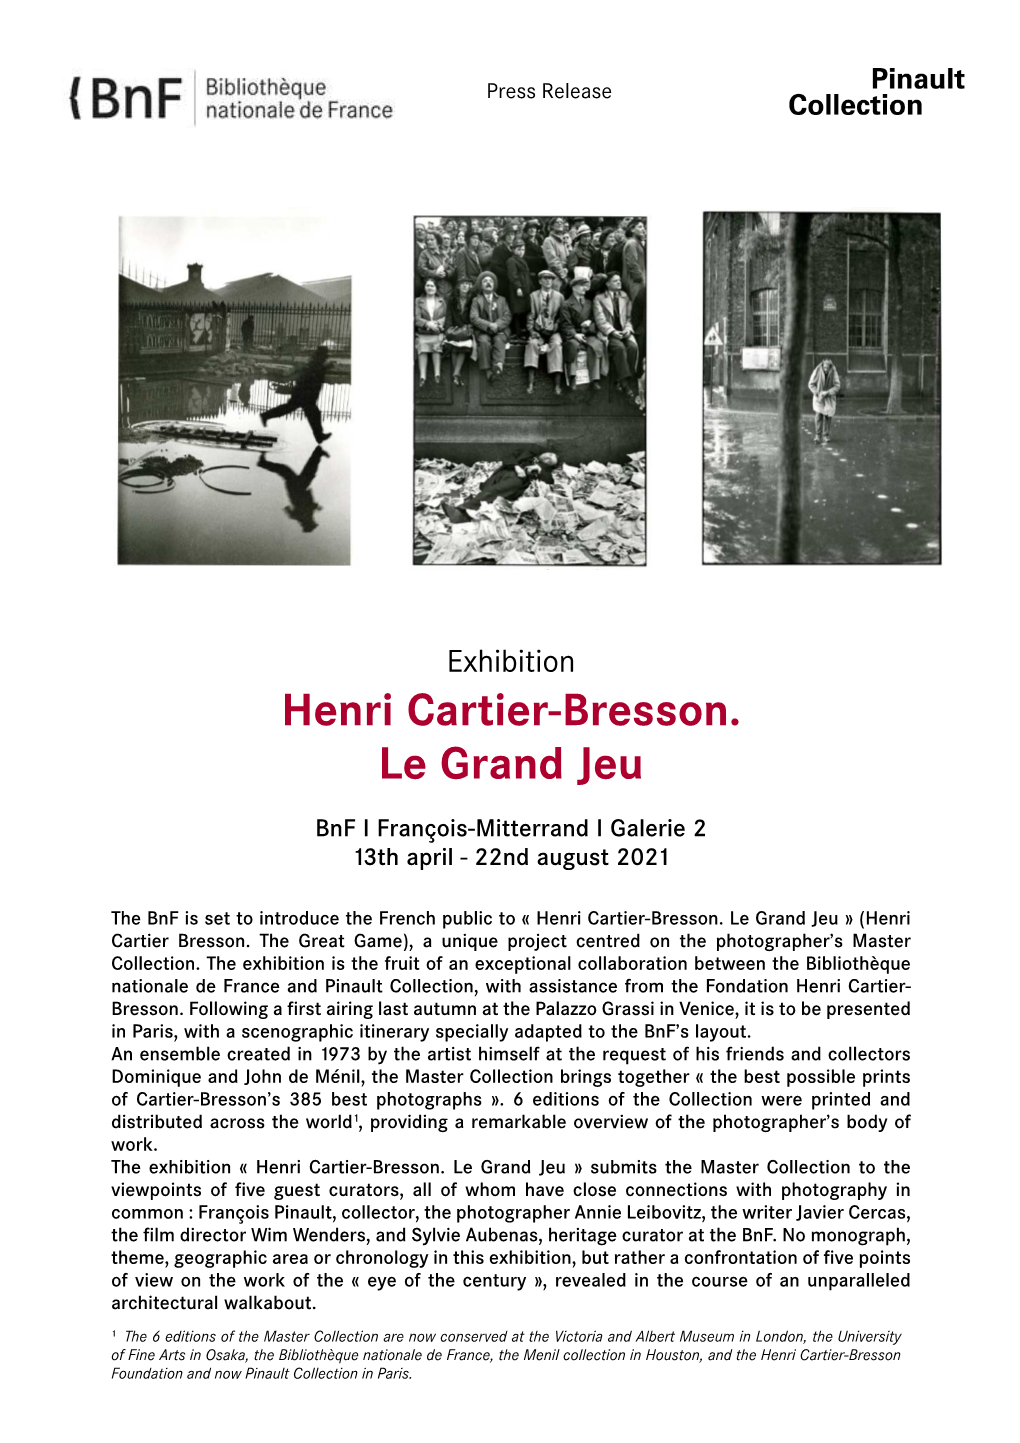 Exhibition Henri Cartier-Bresson. Le Grand Jeu – Press Release –